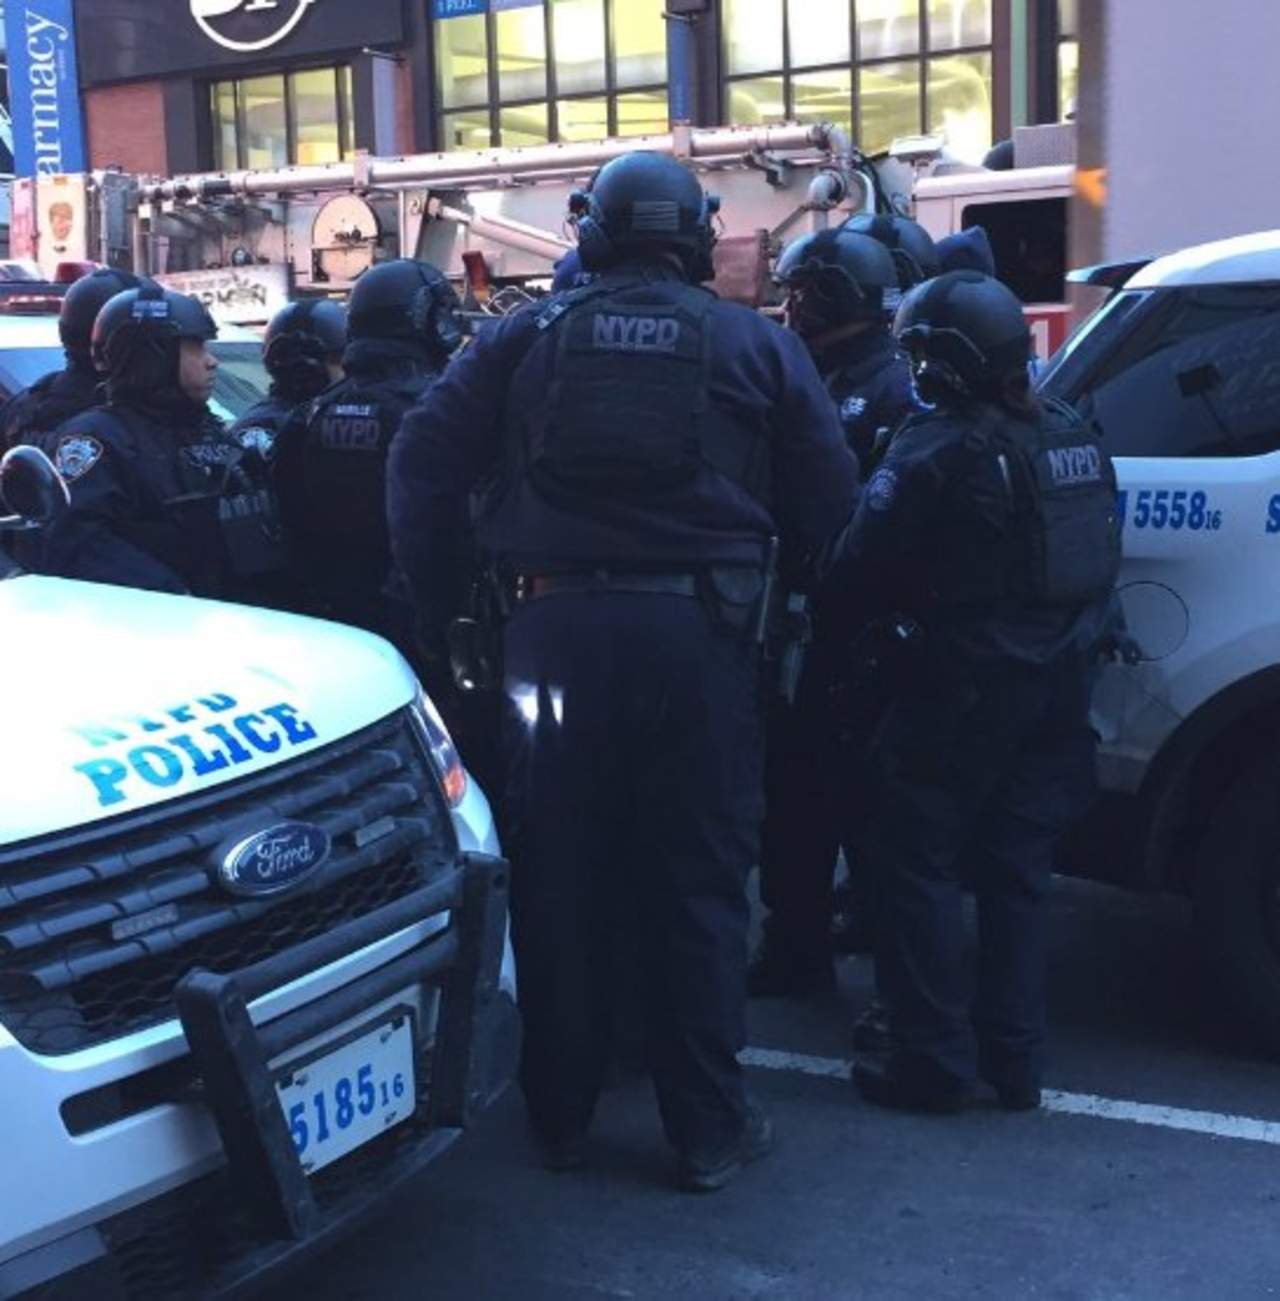 Presunto terrorista resulta herido en explosión en NY